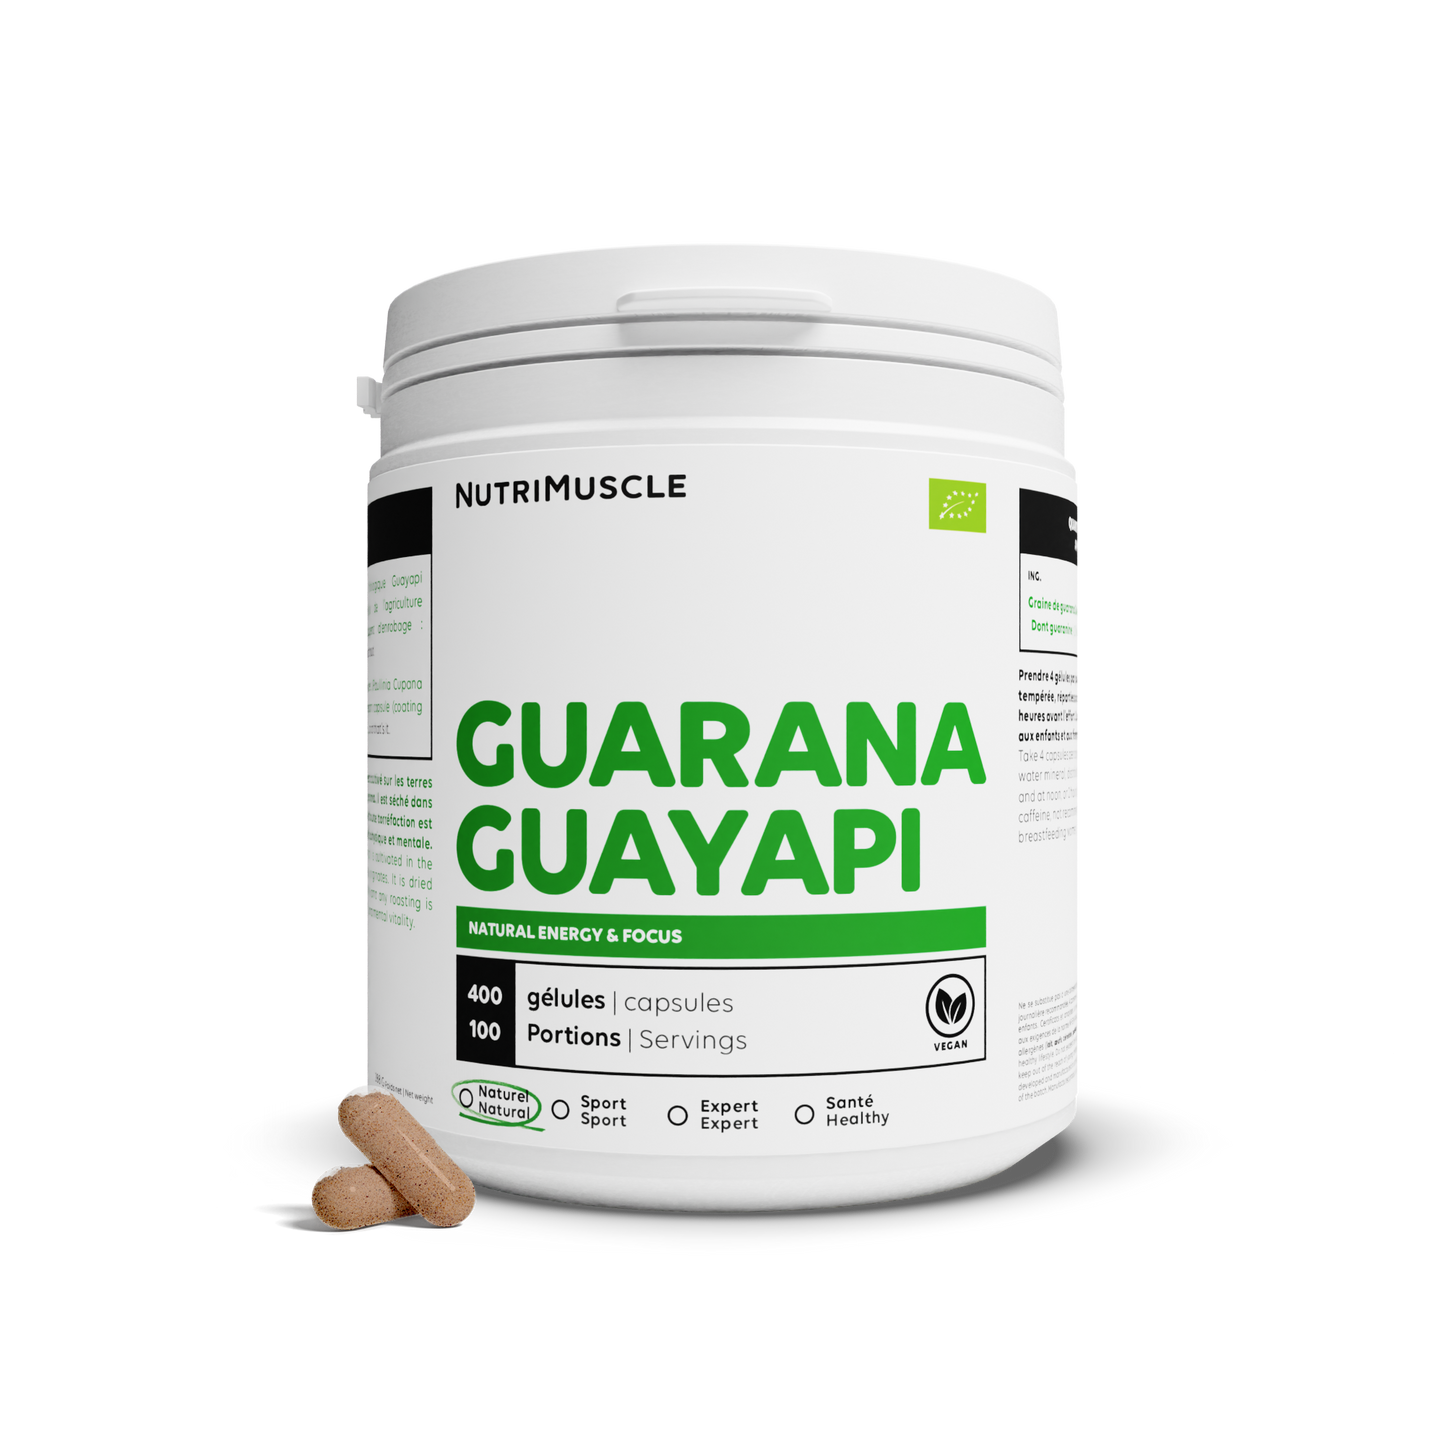 Bio Guarana